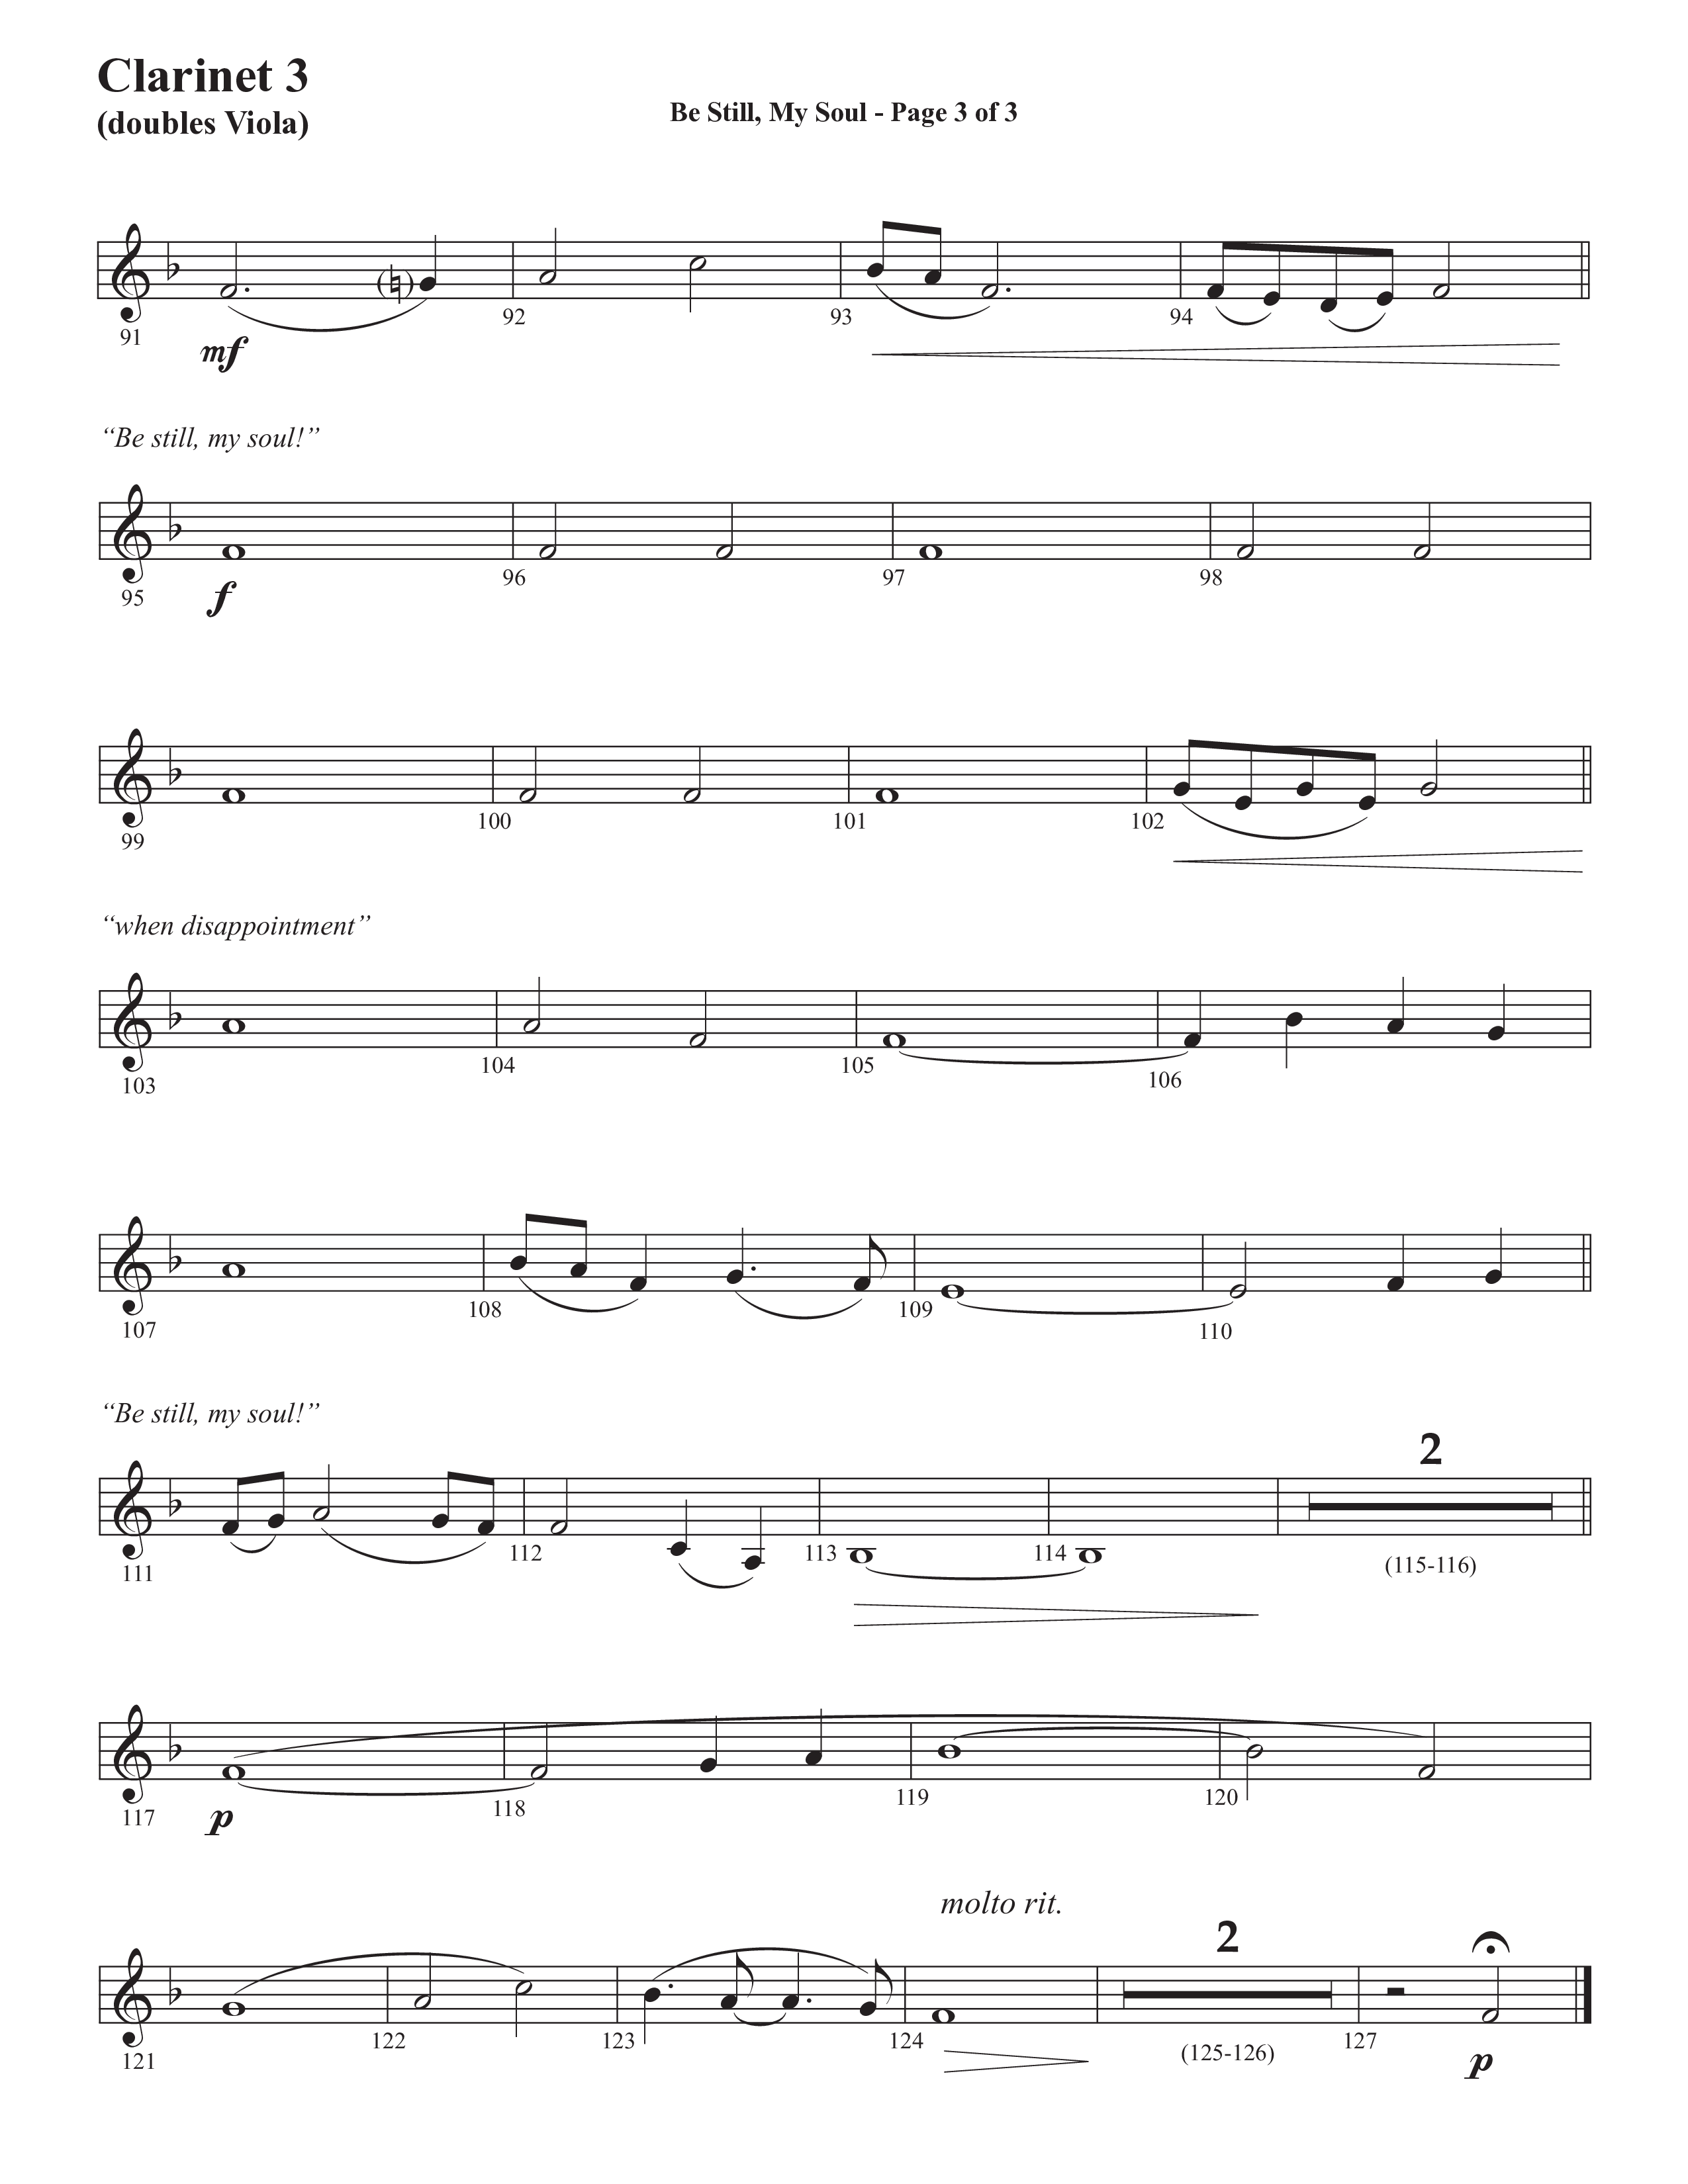 Be Still My Soul (Choral Anthem SATB) Clarinet 3 (Semsen Music / Arr. Cliff Duren)